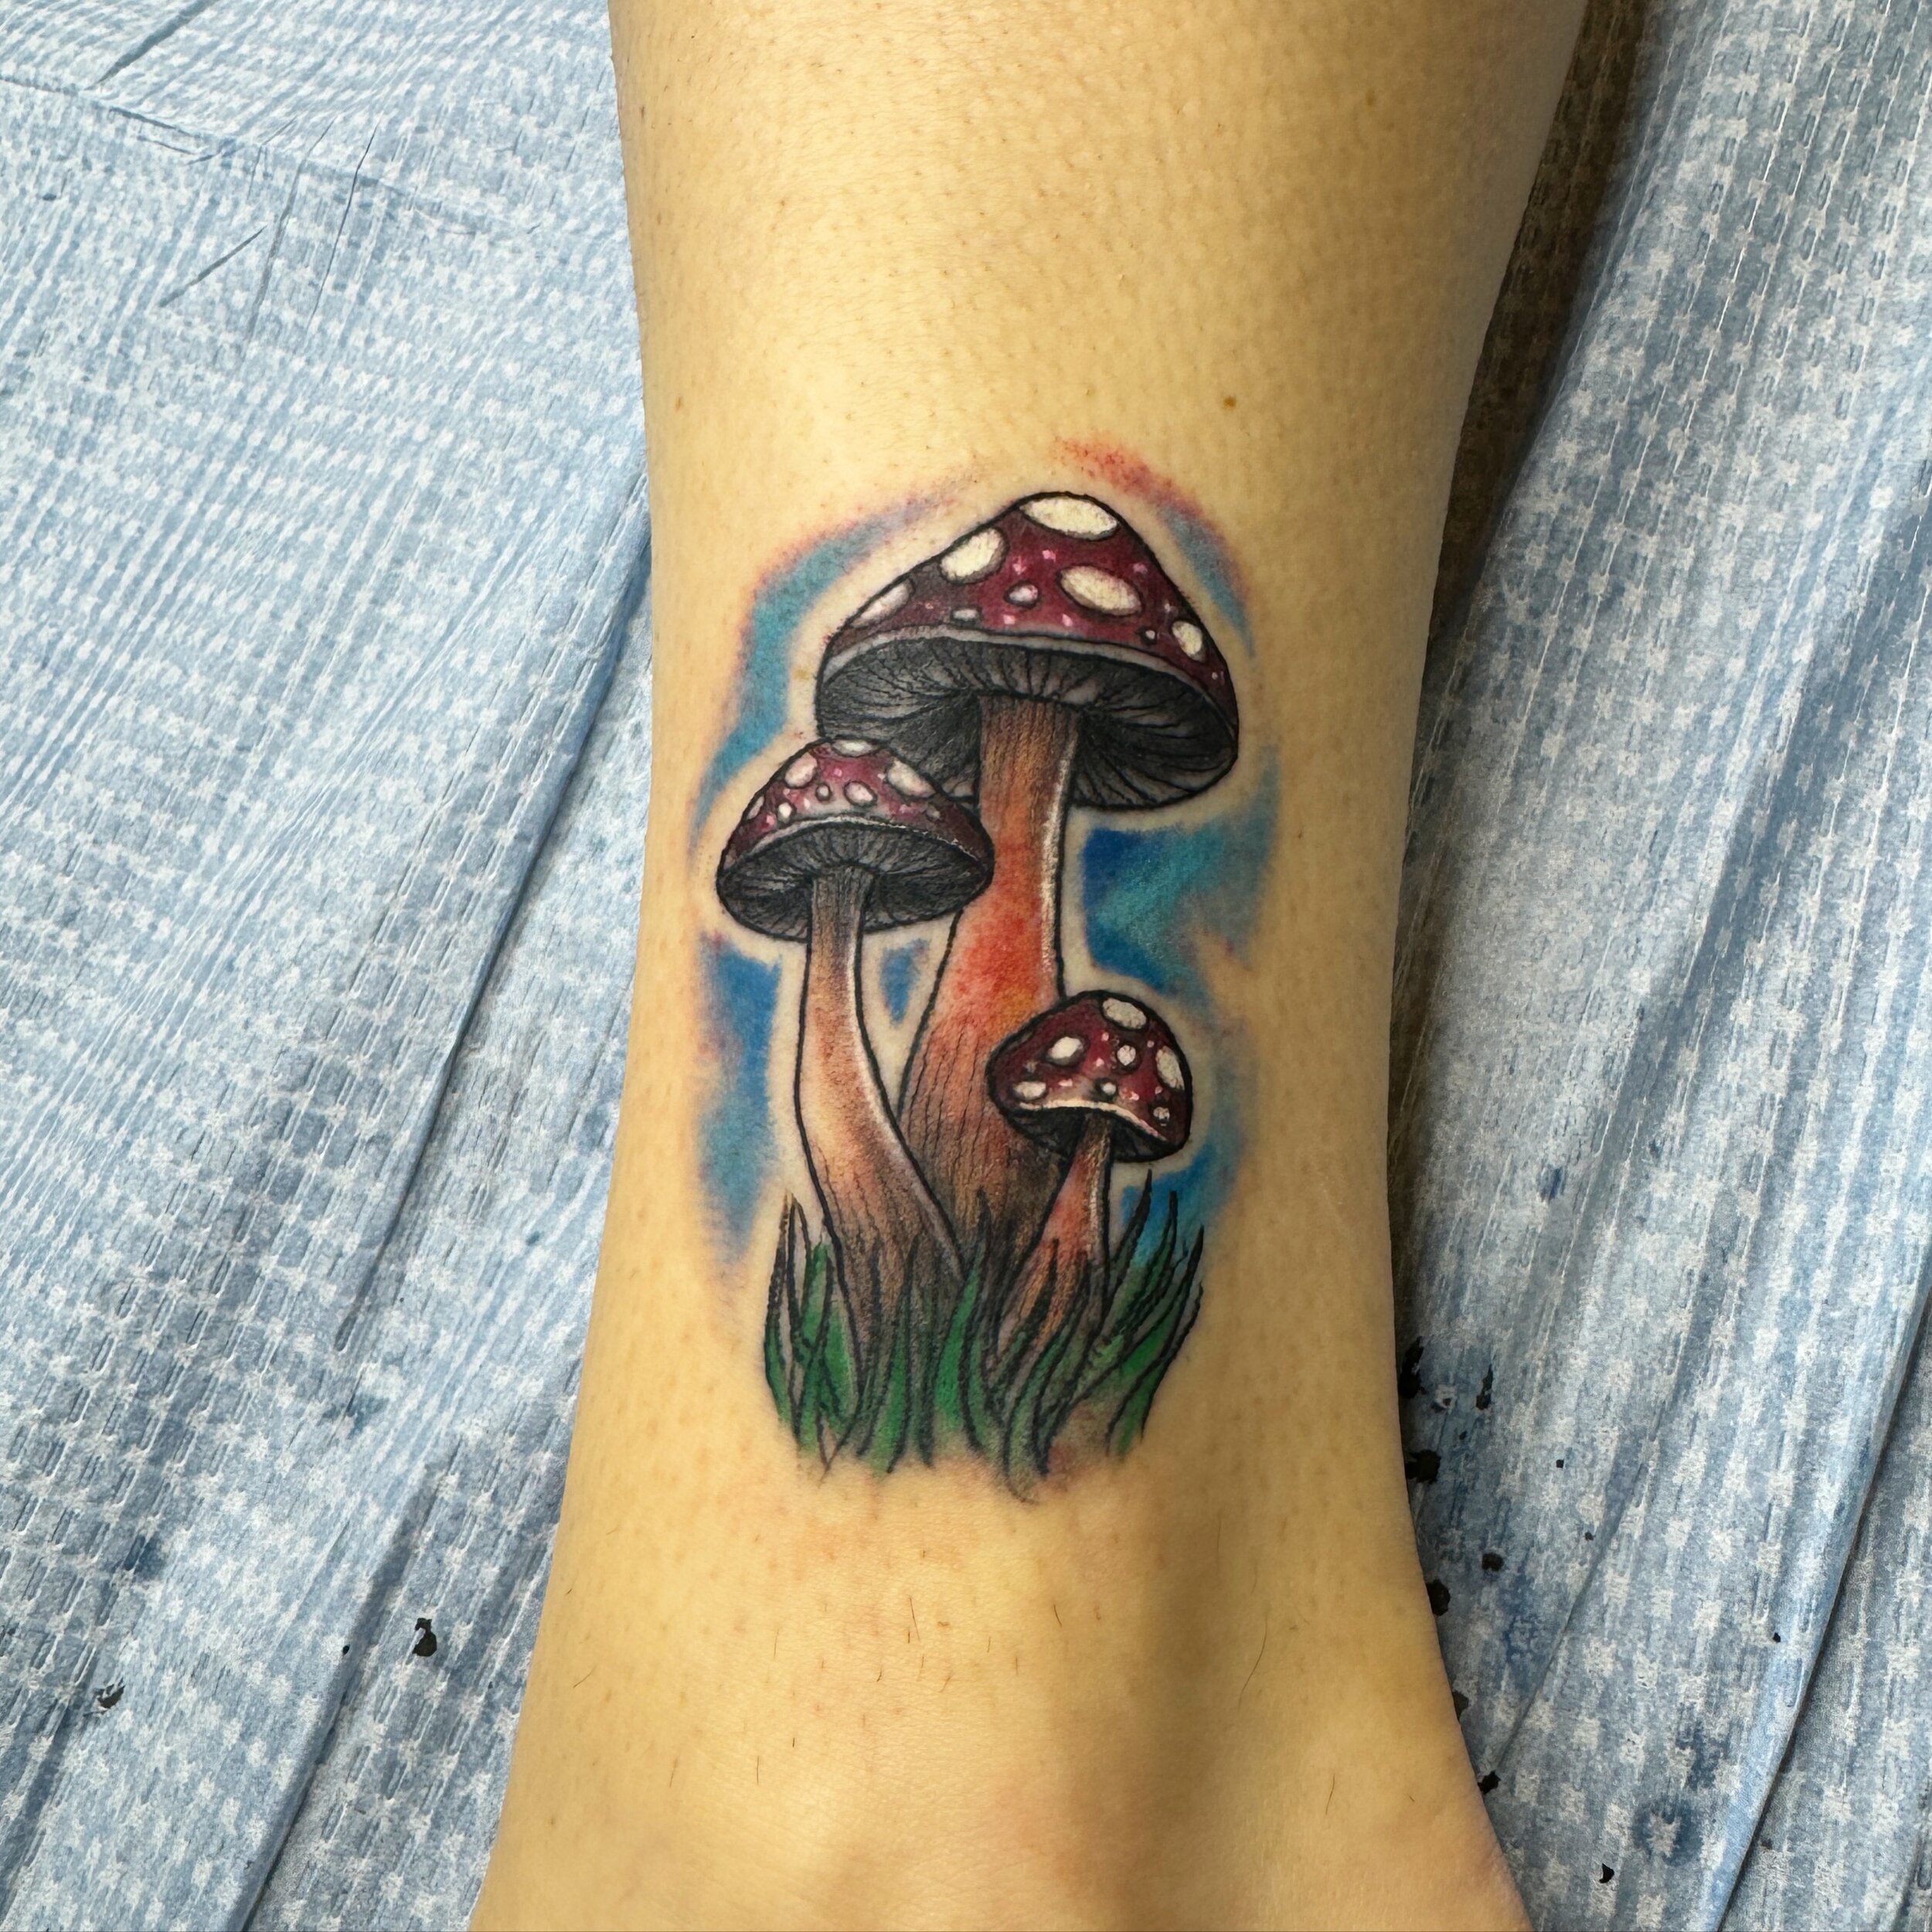 #mushroom #tattoo by @philcolvintattoo 
.
.
#mushrooms #mushrooms🍄 #🍄 #magicmushrooms #colortattoo #naturetattoo #memorialtattooatl